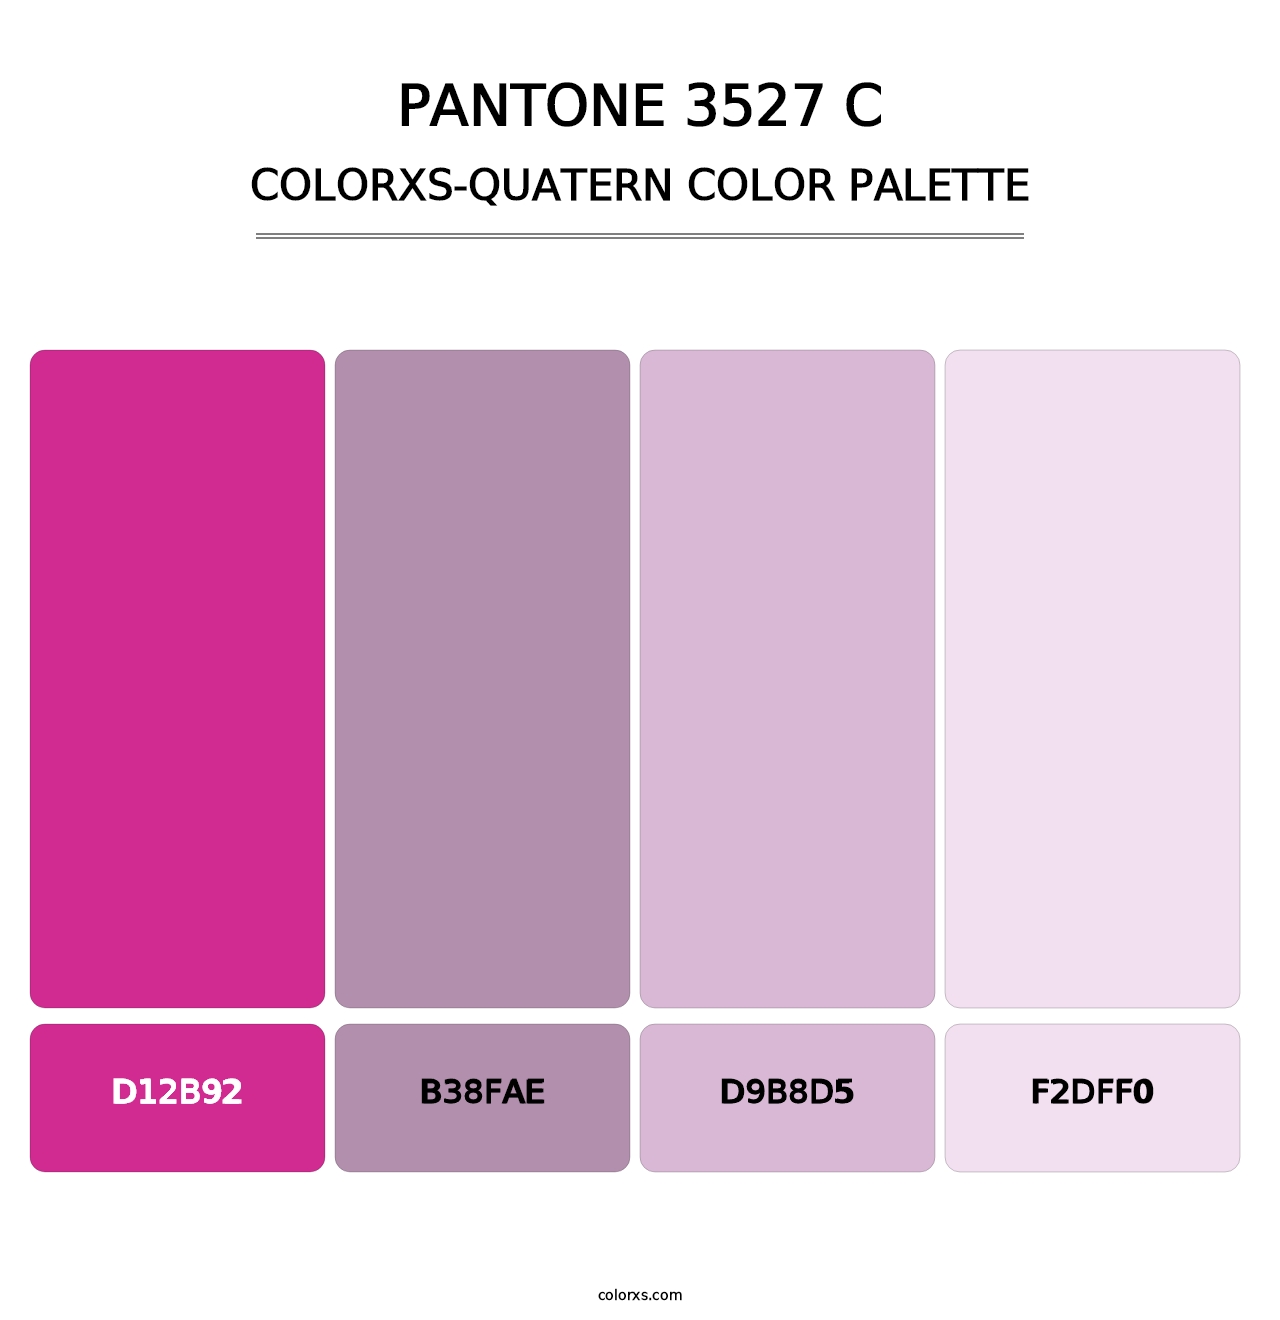 PANTONE 3527 C - Colorxs Quatern Palette